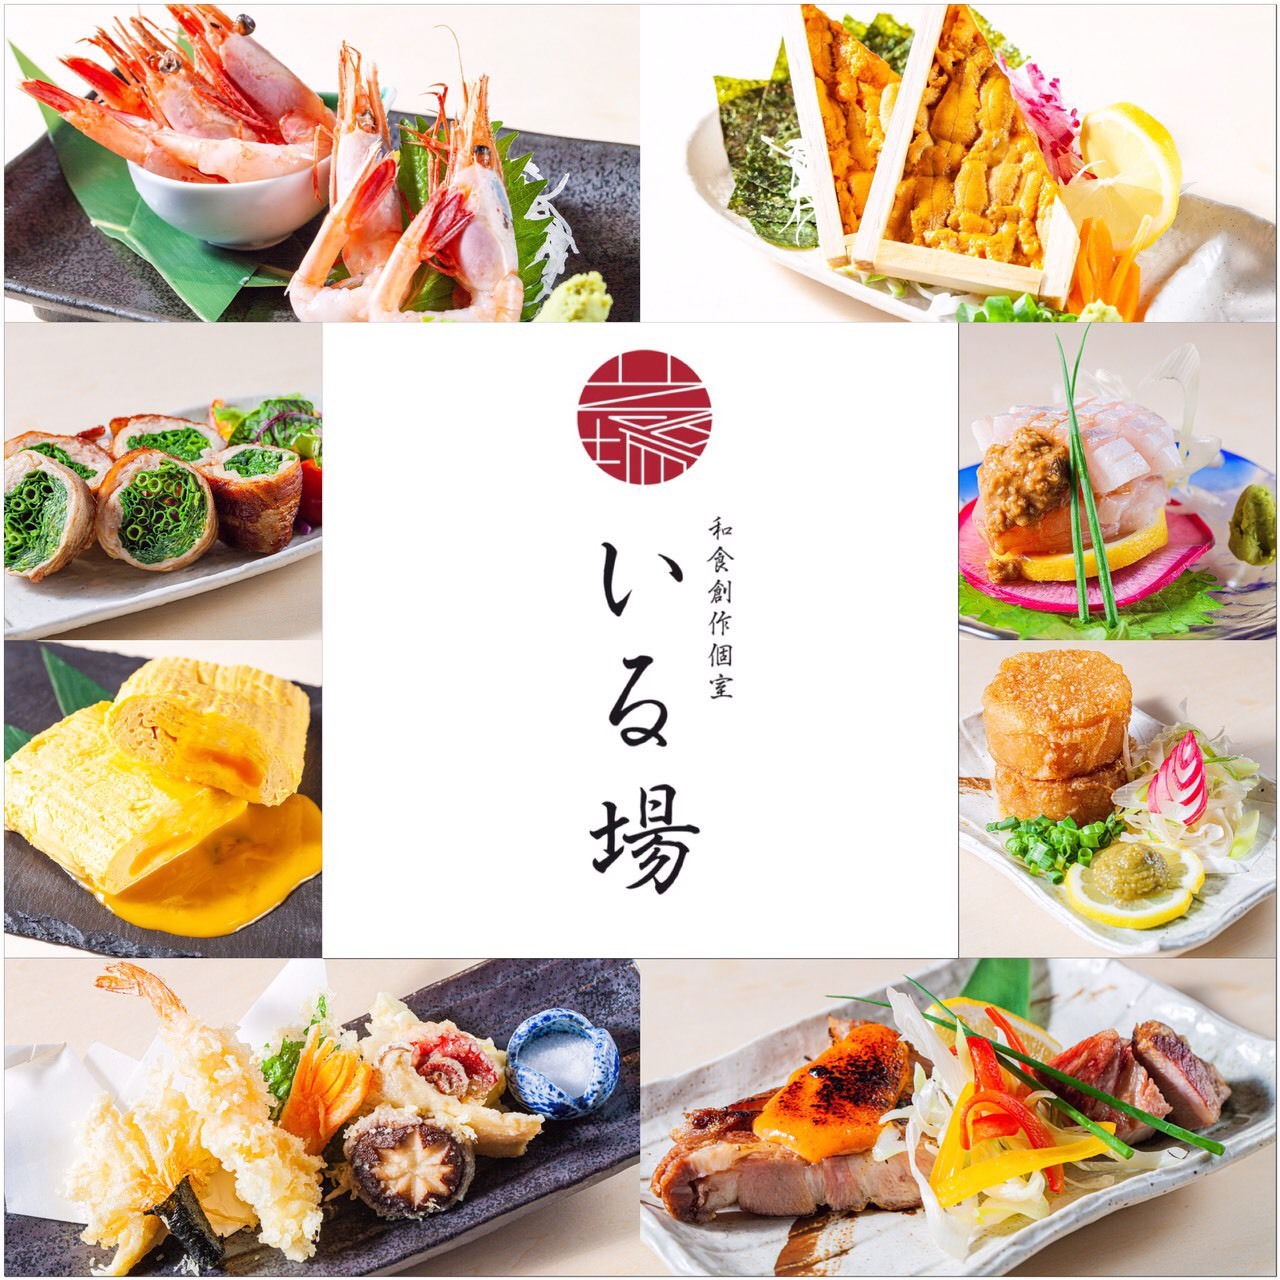 長野県佐久市の高速インターと直結しているBBQ場
「PARADA RESORT BBQ」が7月27日グランドオープン！